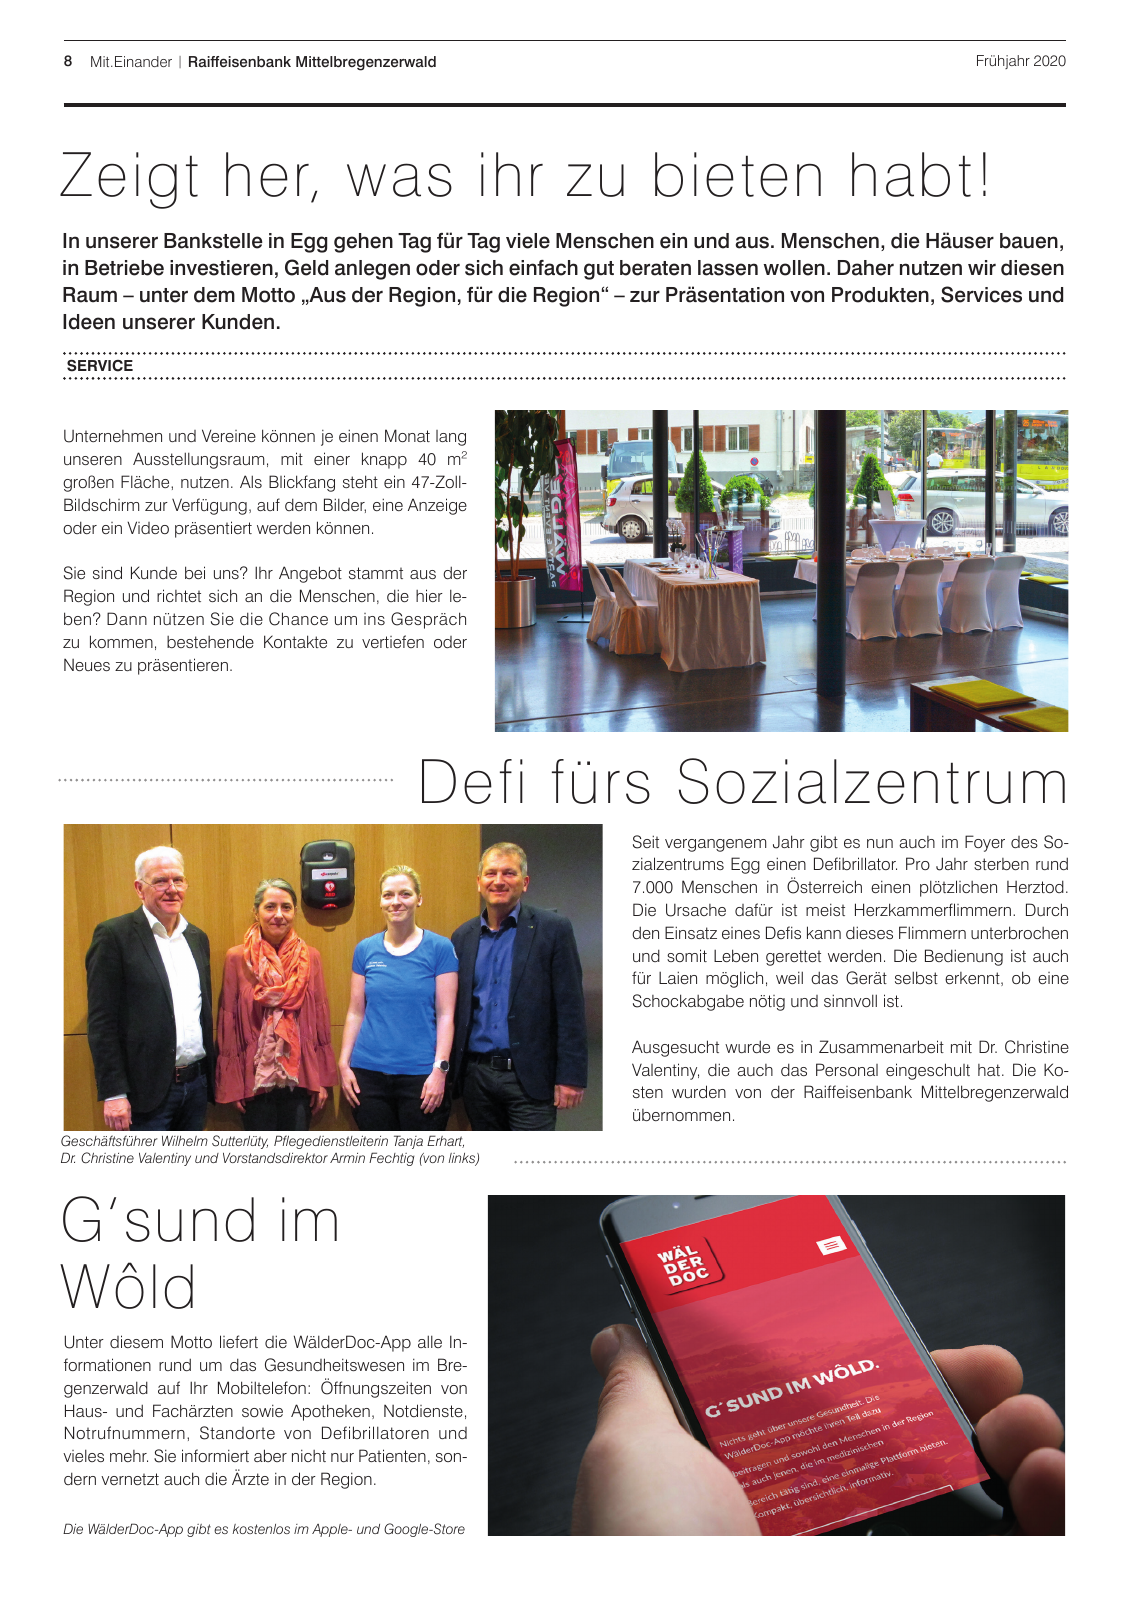 Vorschau Mitgliederzeitung RB Mittelbregenzerwald Frühjahr 2020 Seite 8